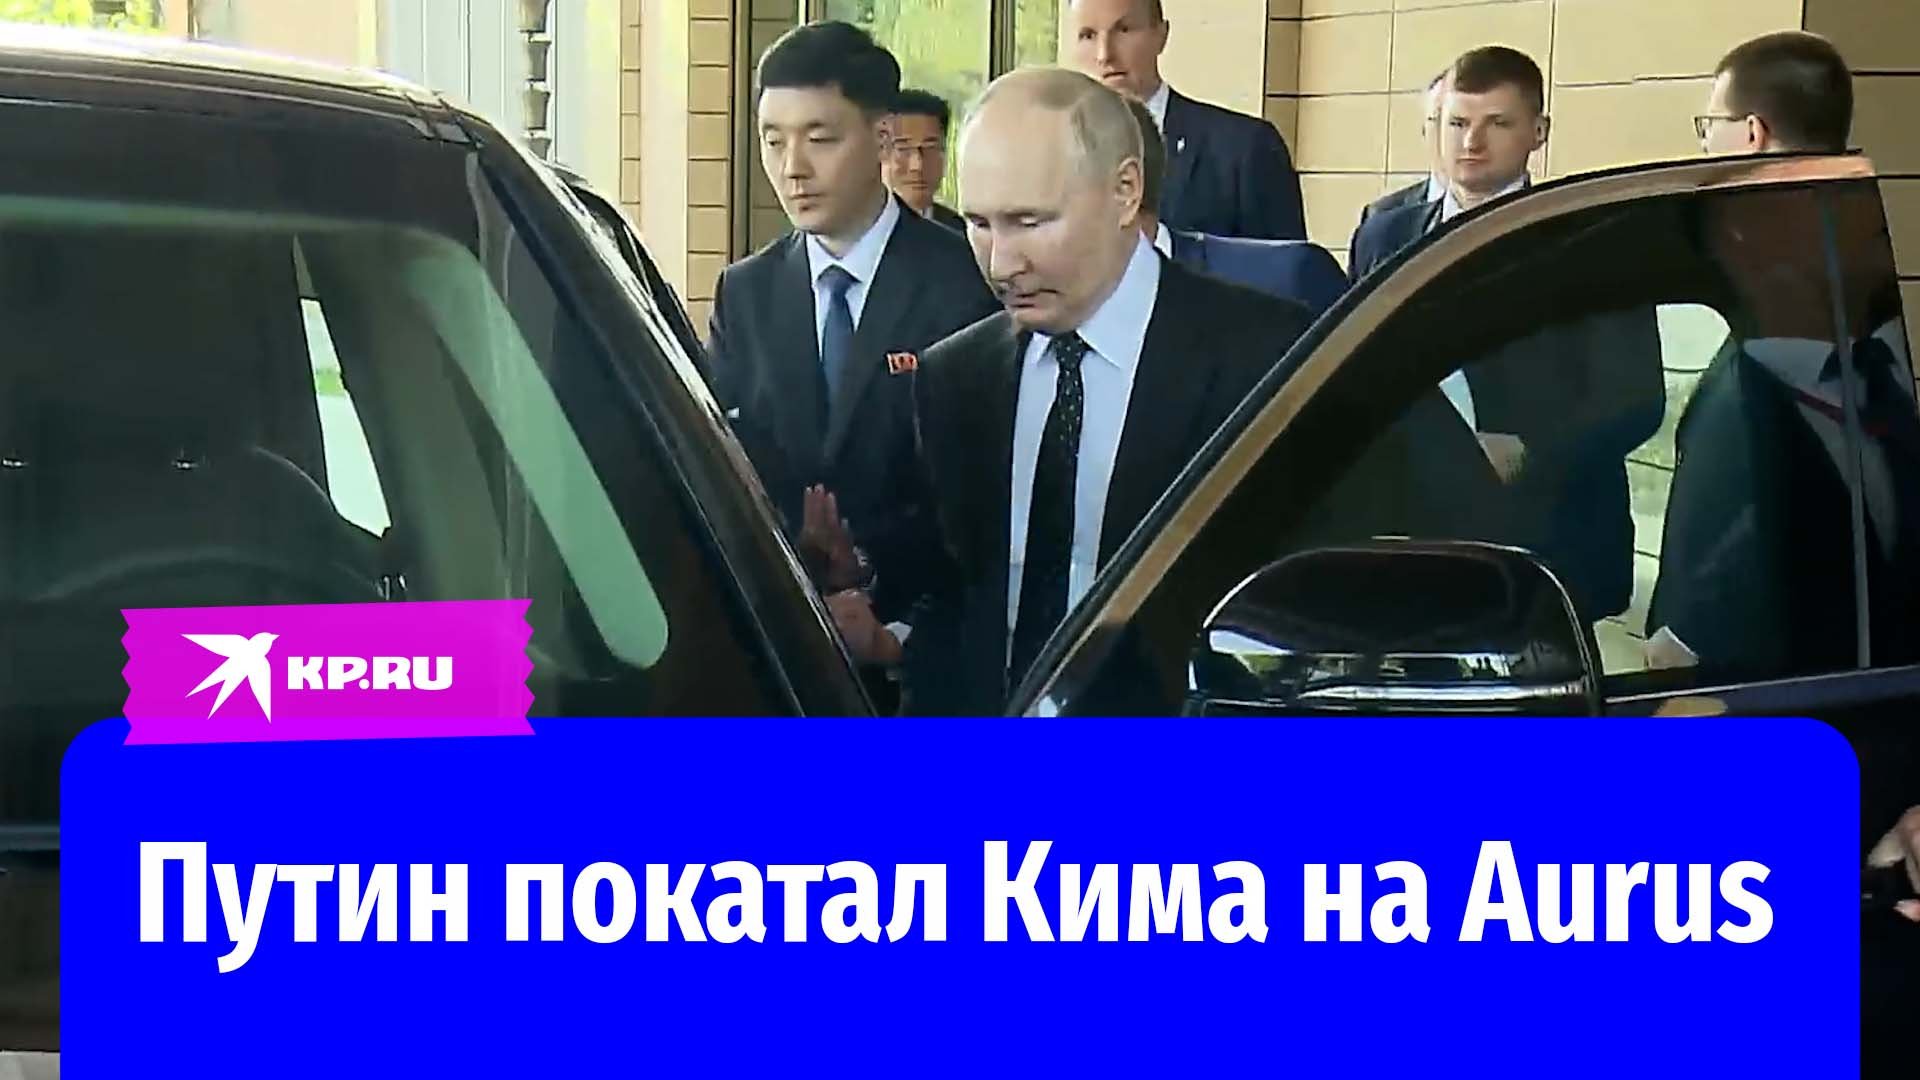 Владимир Путин прокатил Ким Чен Ына в Aurus